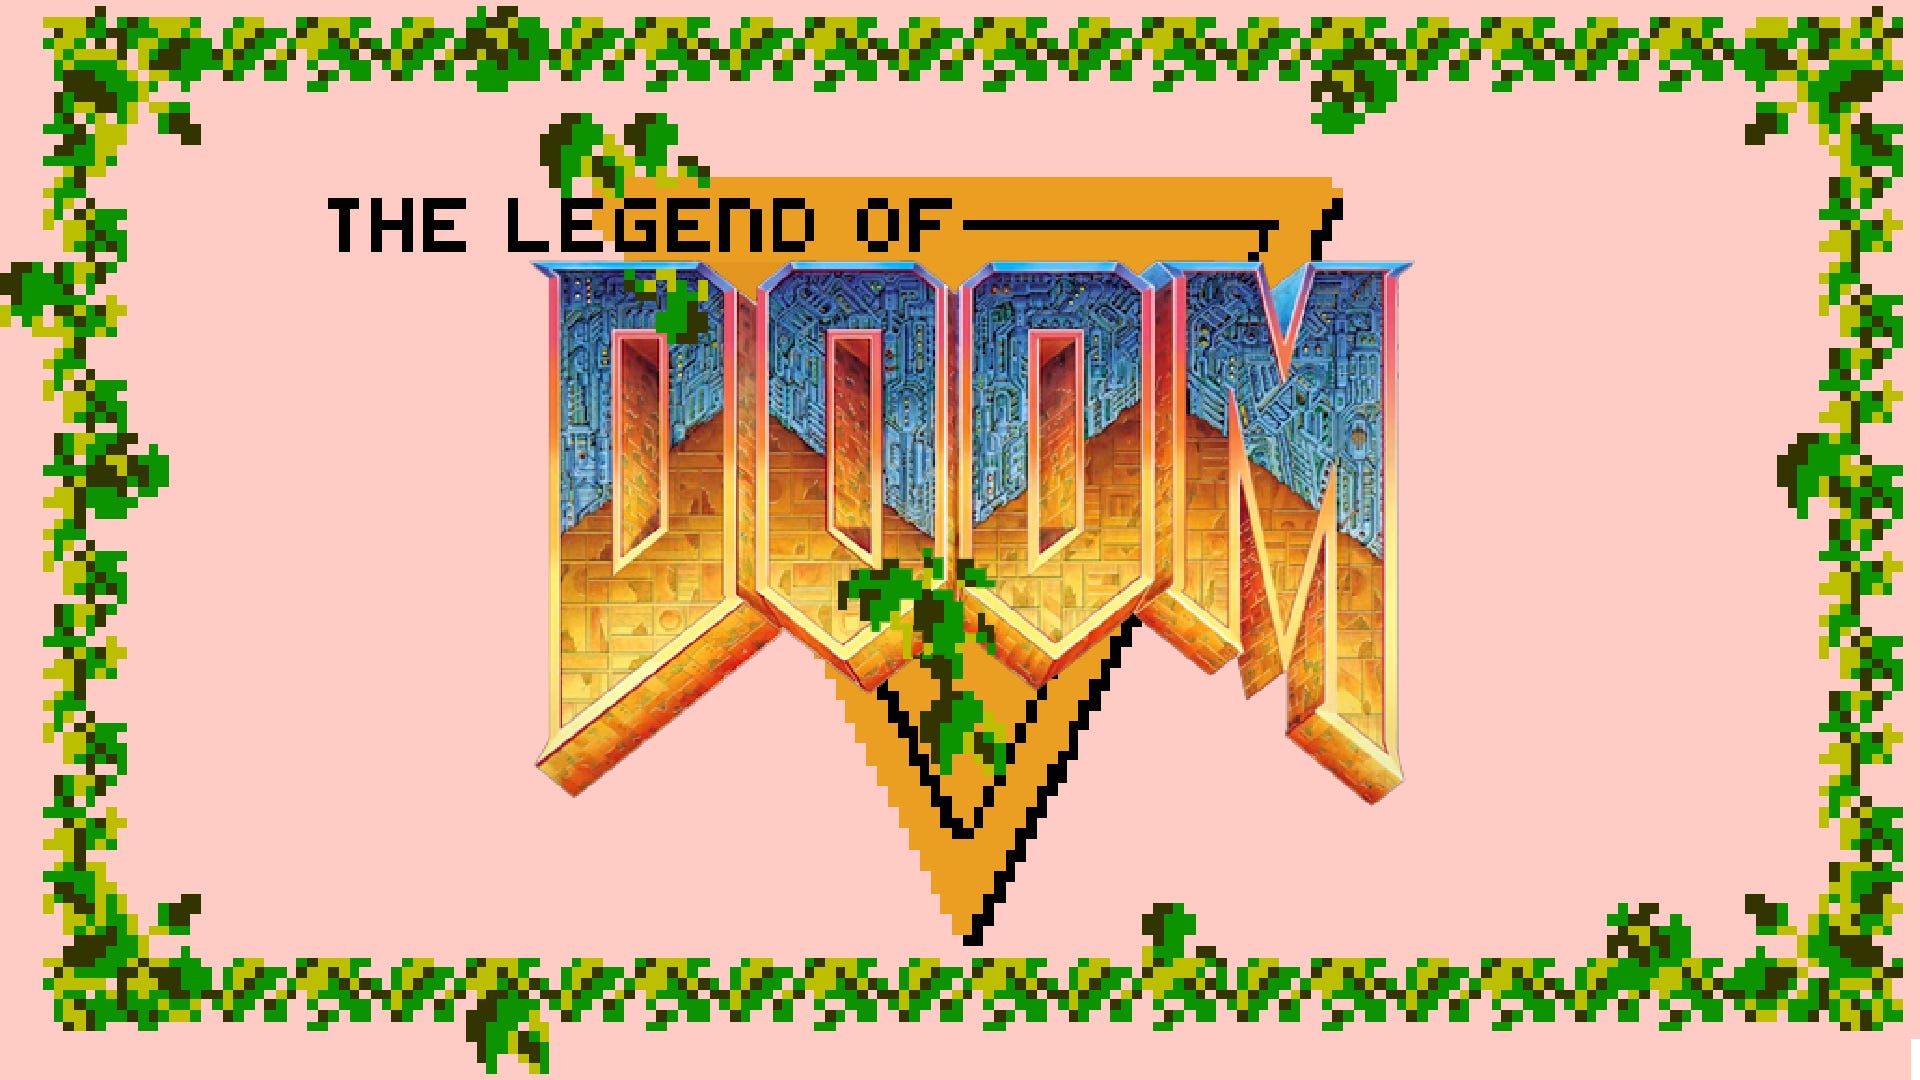 Original ‘The Legend of Zelda’ Recreated in VR